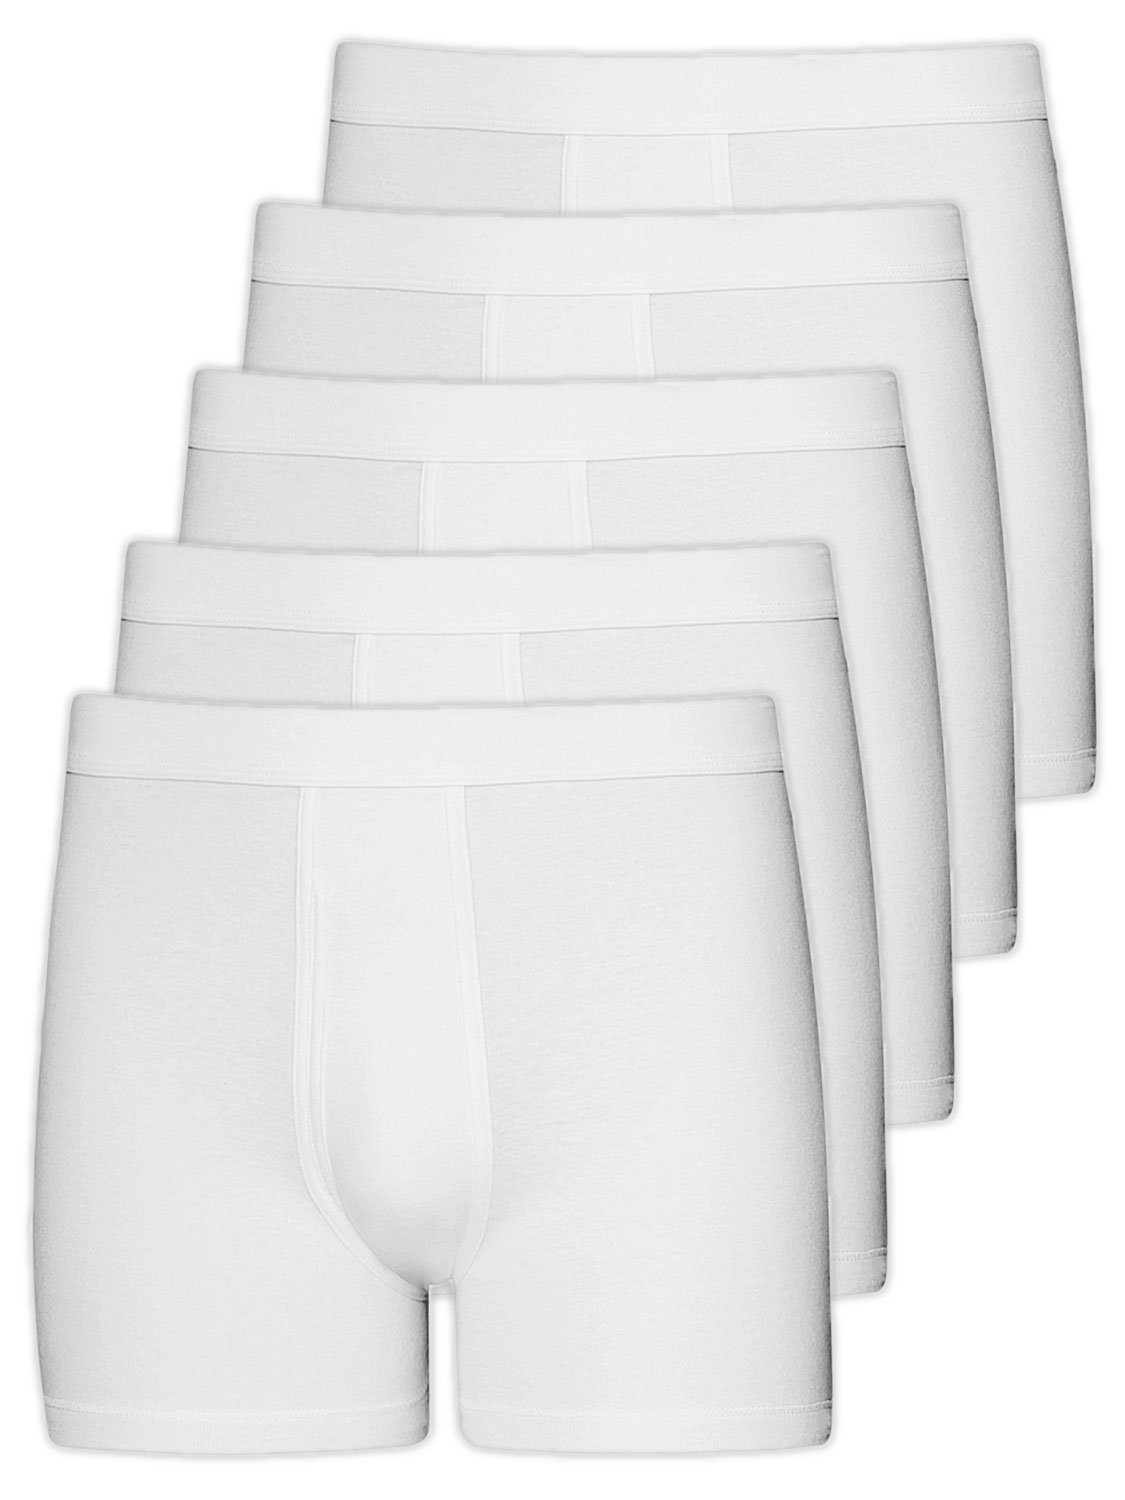 Wäsche/Bademode Unterhosen ESGE - Die Wäsche-Macher Retro Pants Herren Pant mit Eingriff 5er Pack Feinripp (5 Stück) mit eingrif